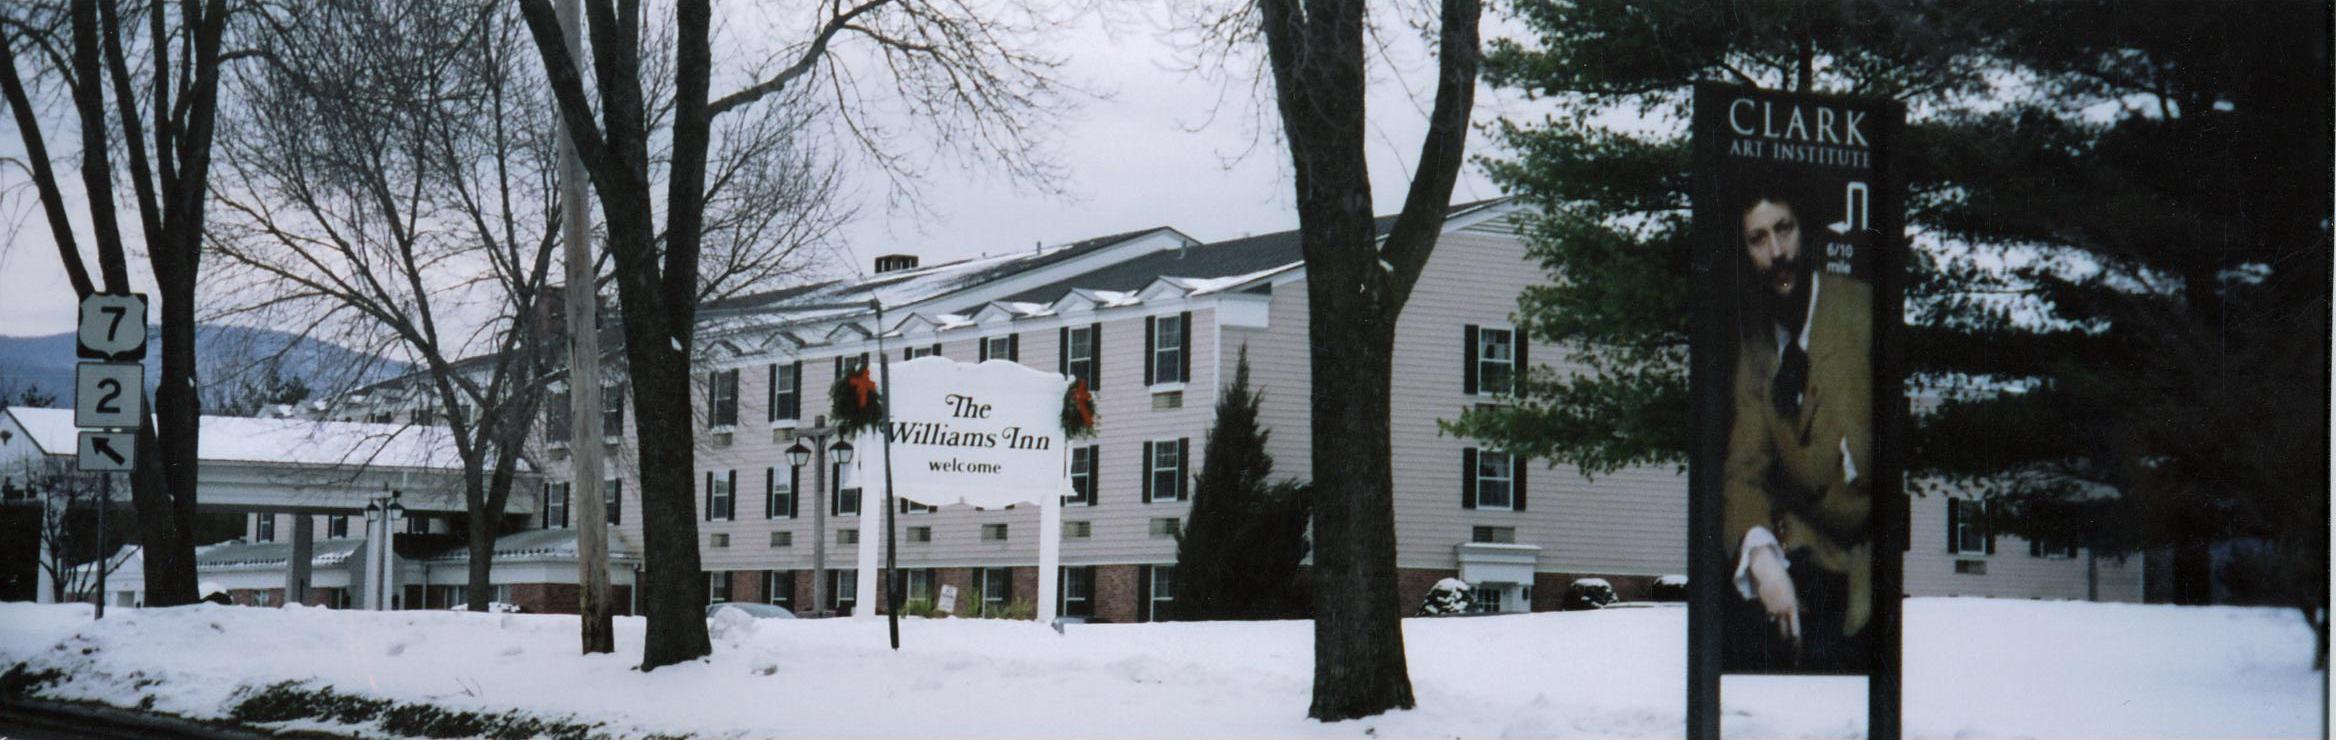  The Williams Inn, Williamstown, Massachusetts 